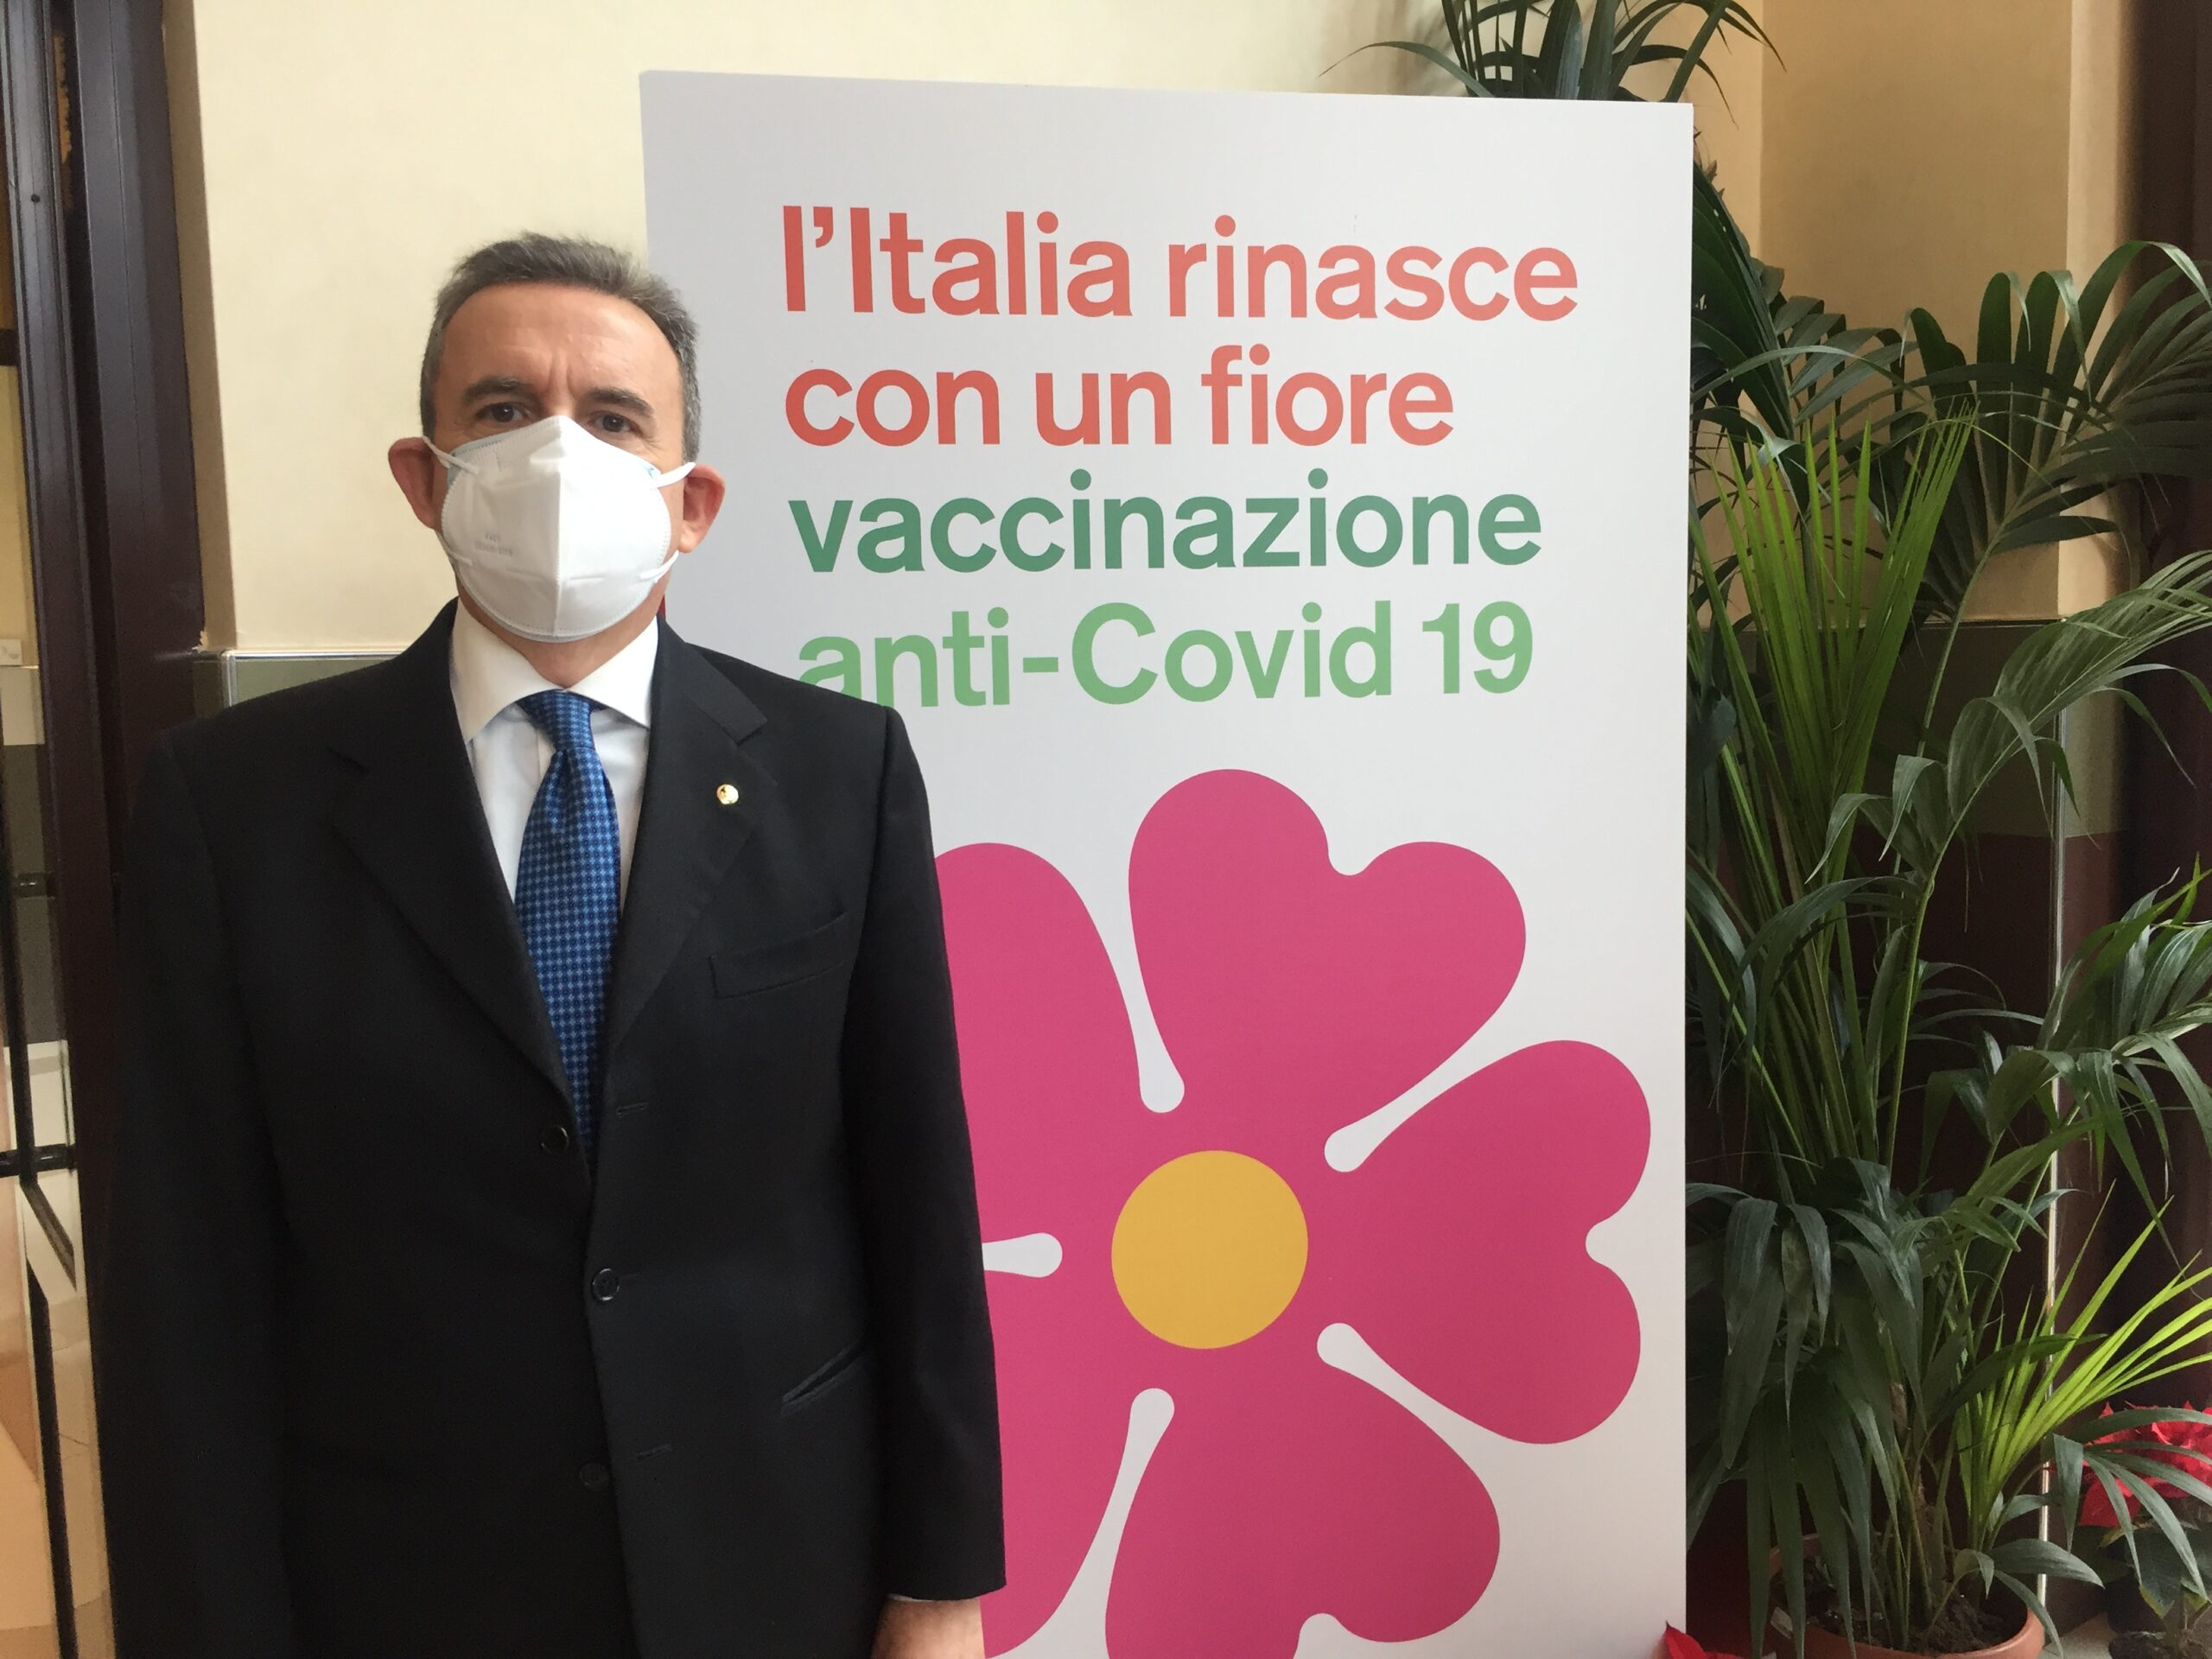 Vaccino, dai medici di Caltanissetta appello alla responsabilità.  D’Ippolito: “Proteggersi da nuove ondate, scetticismo inaccettabile”